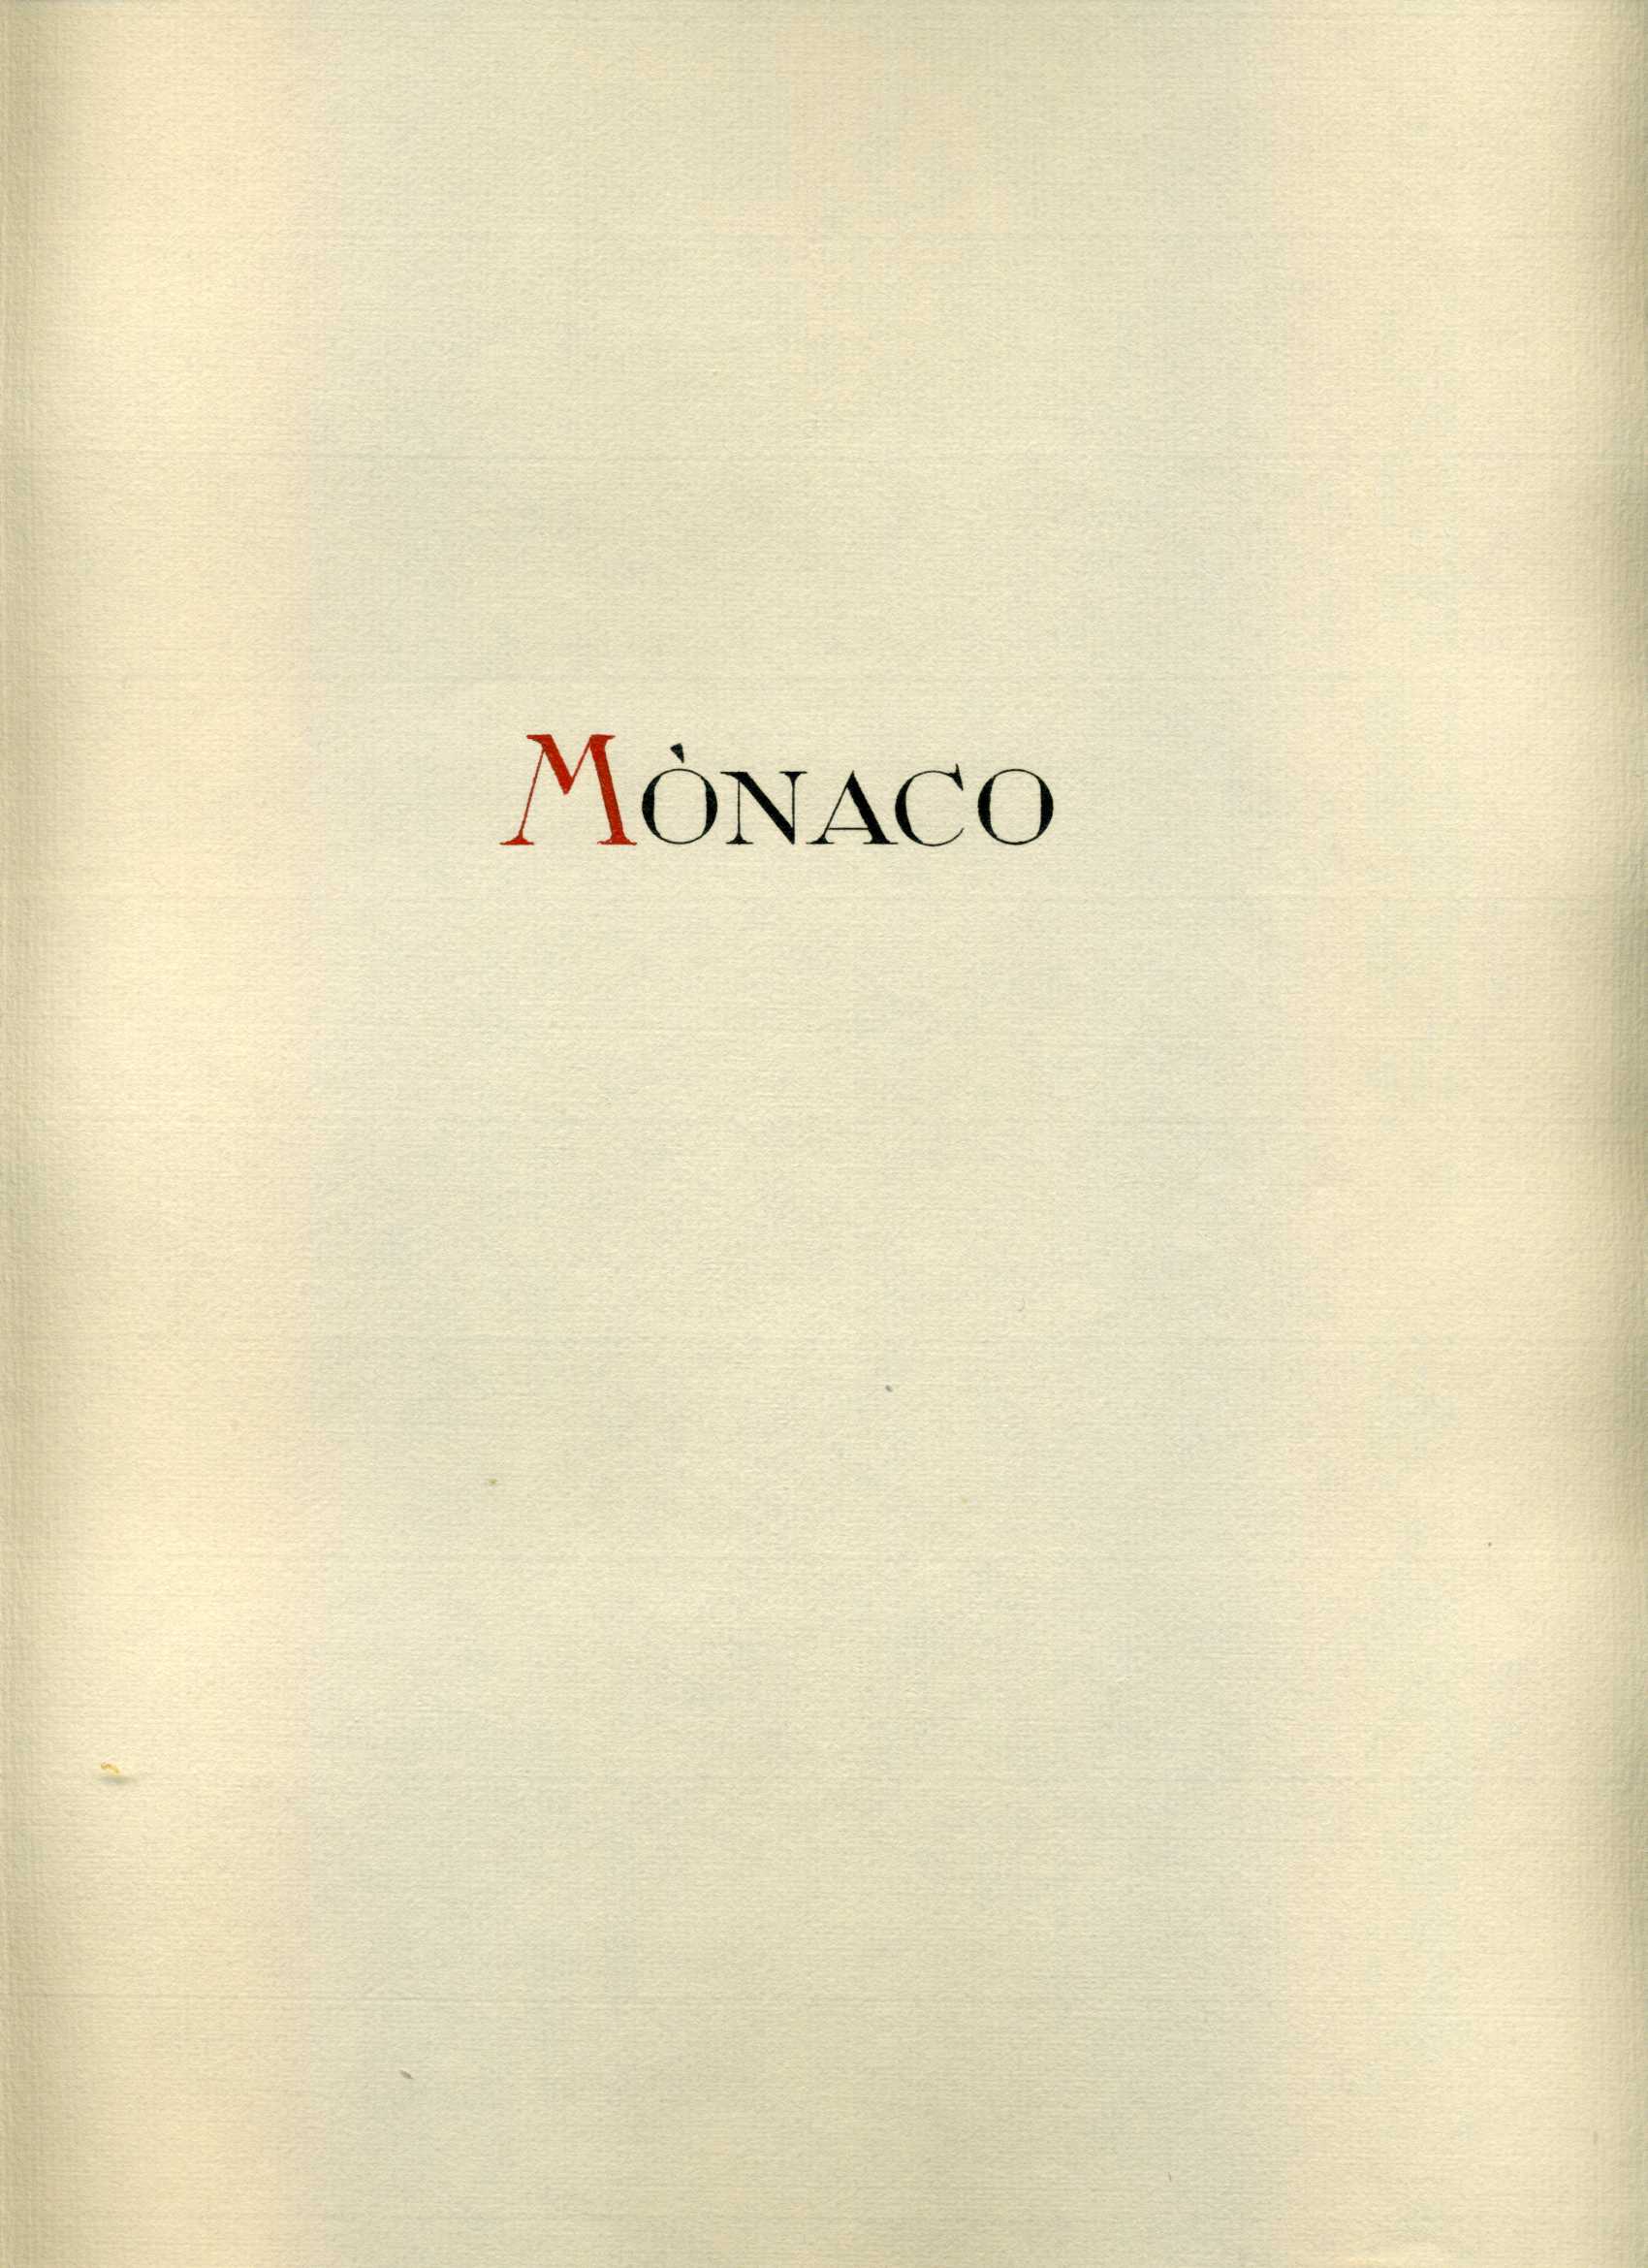 Foto COLECCIÓN COLLECTION MÓNACO MONACO 1885 - 1928 YVERT 1.802 €